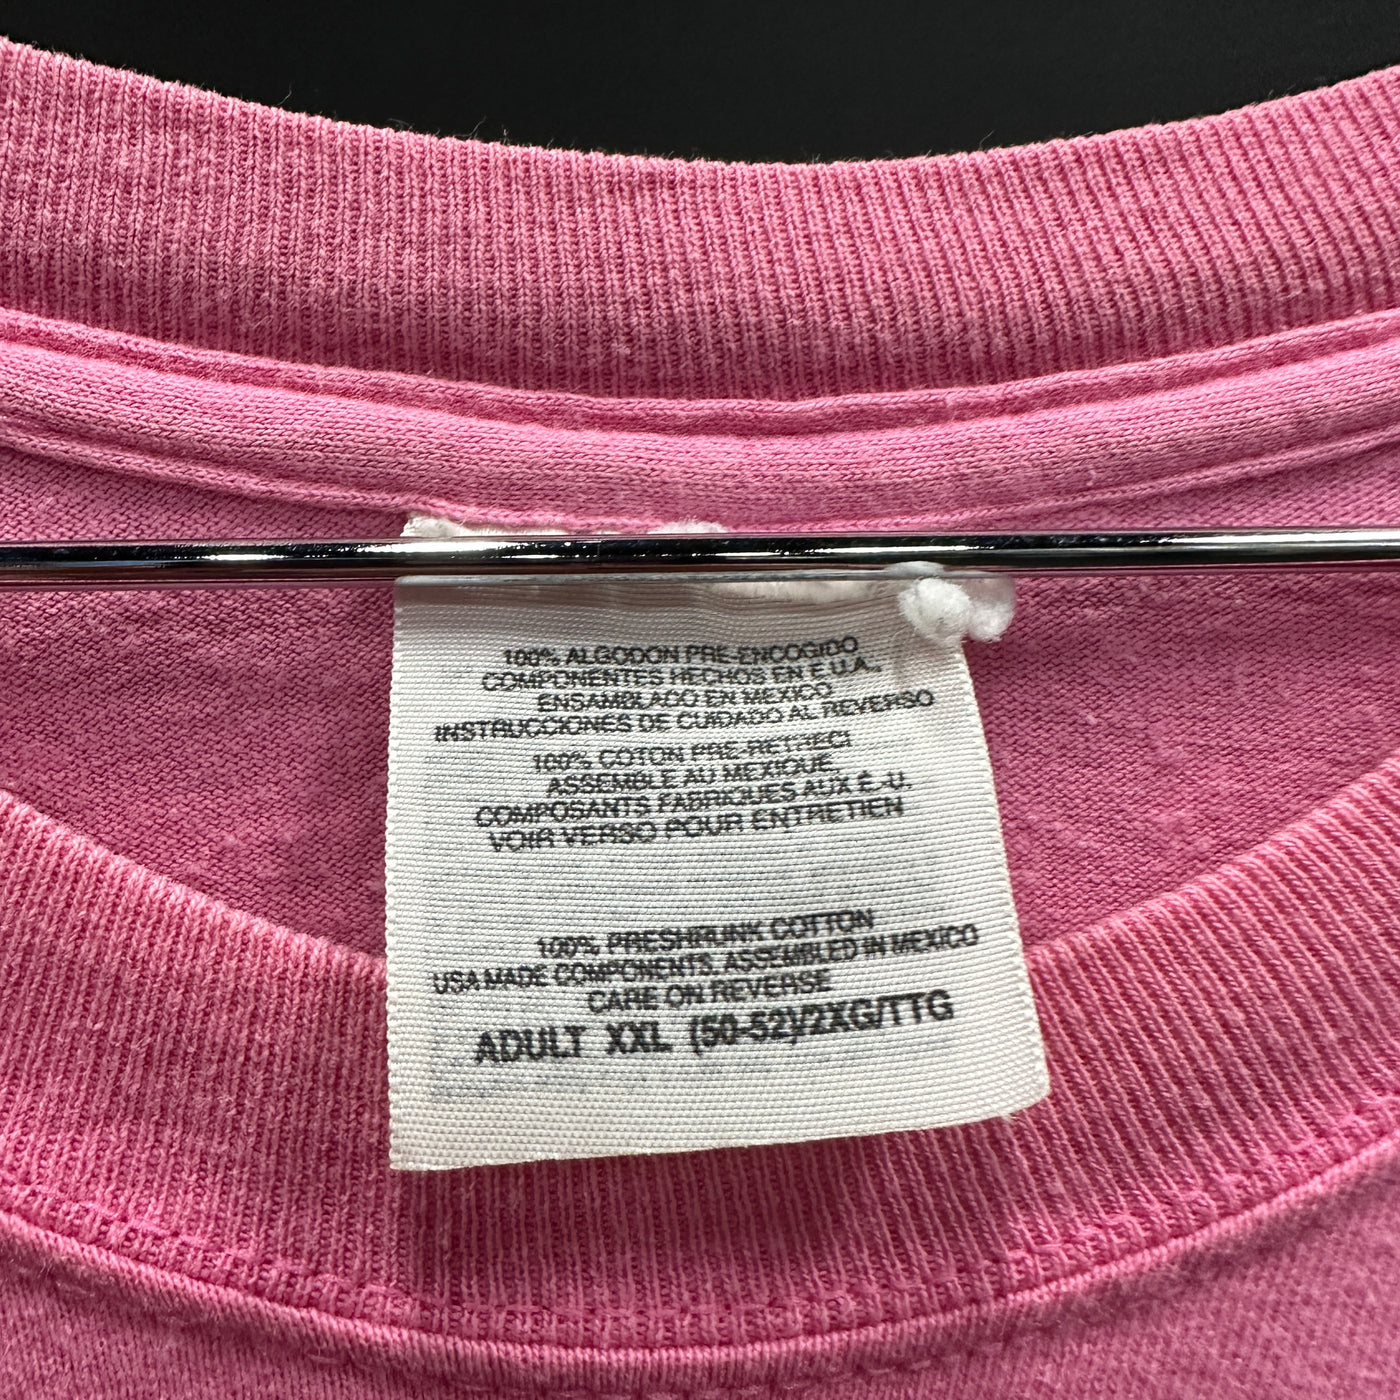 '98 Officer Betty Boop Pink Cartoon T-shirt sz 2XL